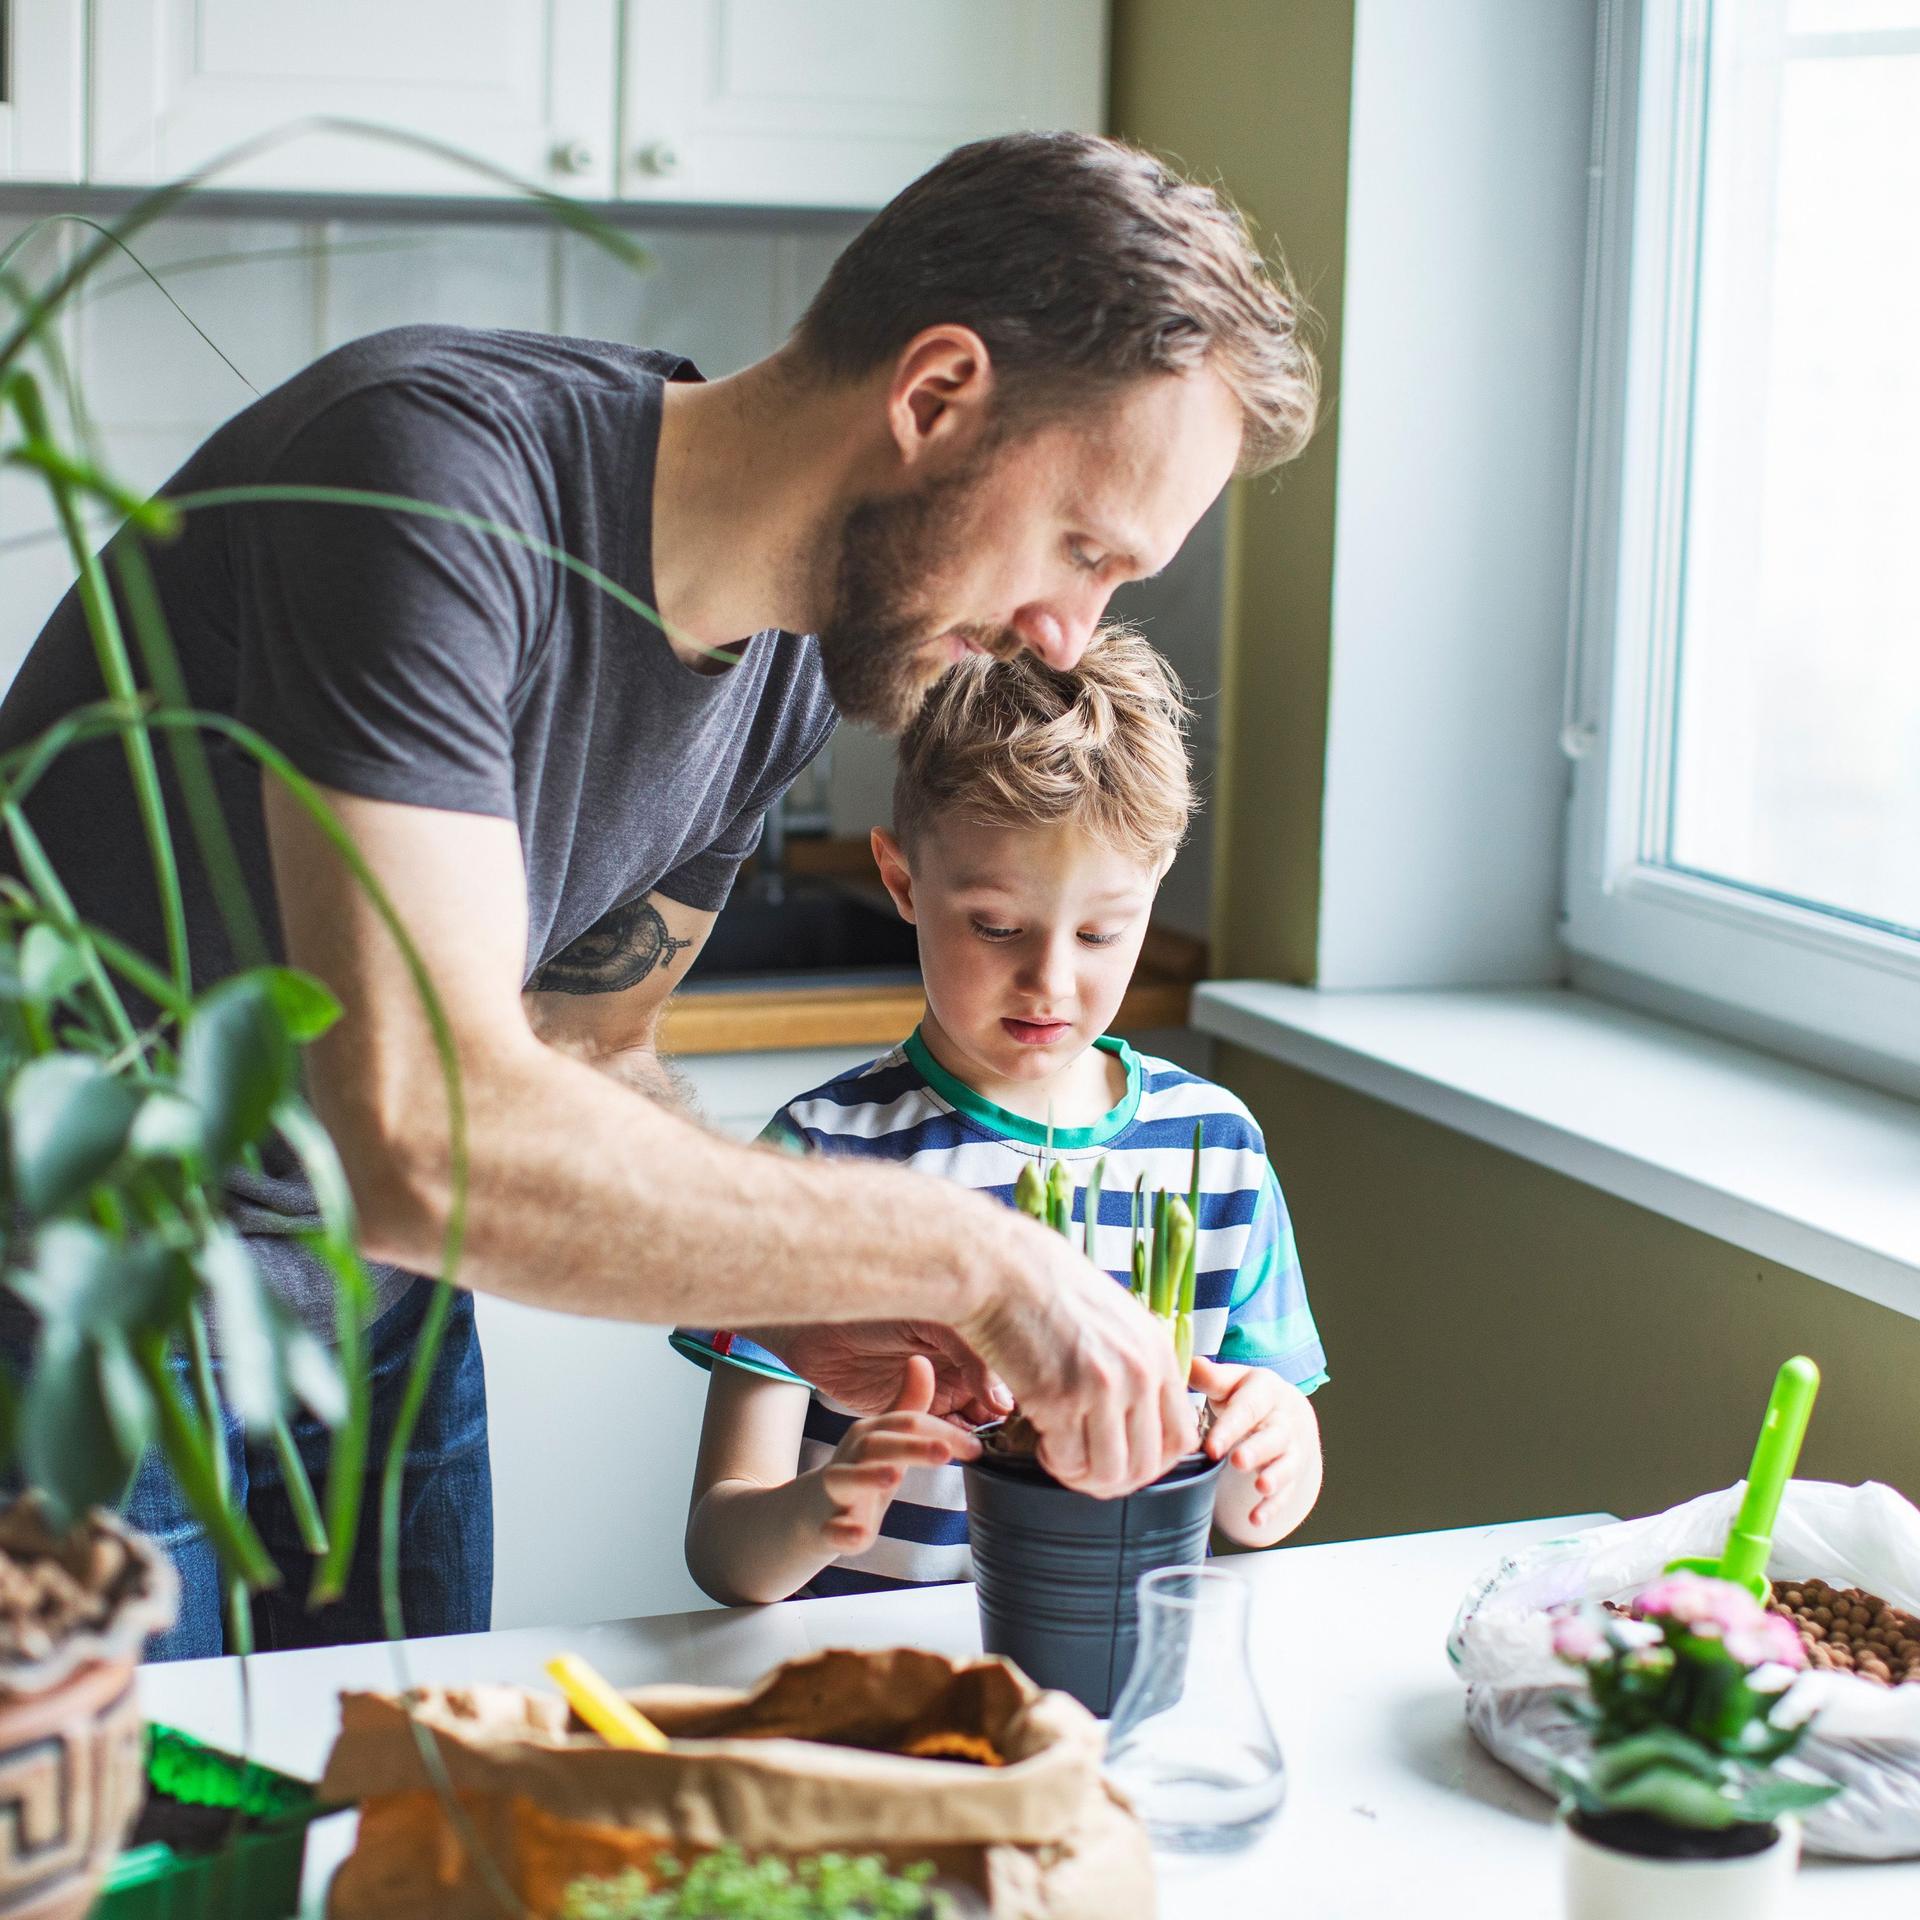 Ein Mann pflanzt mit seinem Sohn eine Pflanze in einen Topf.